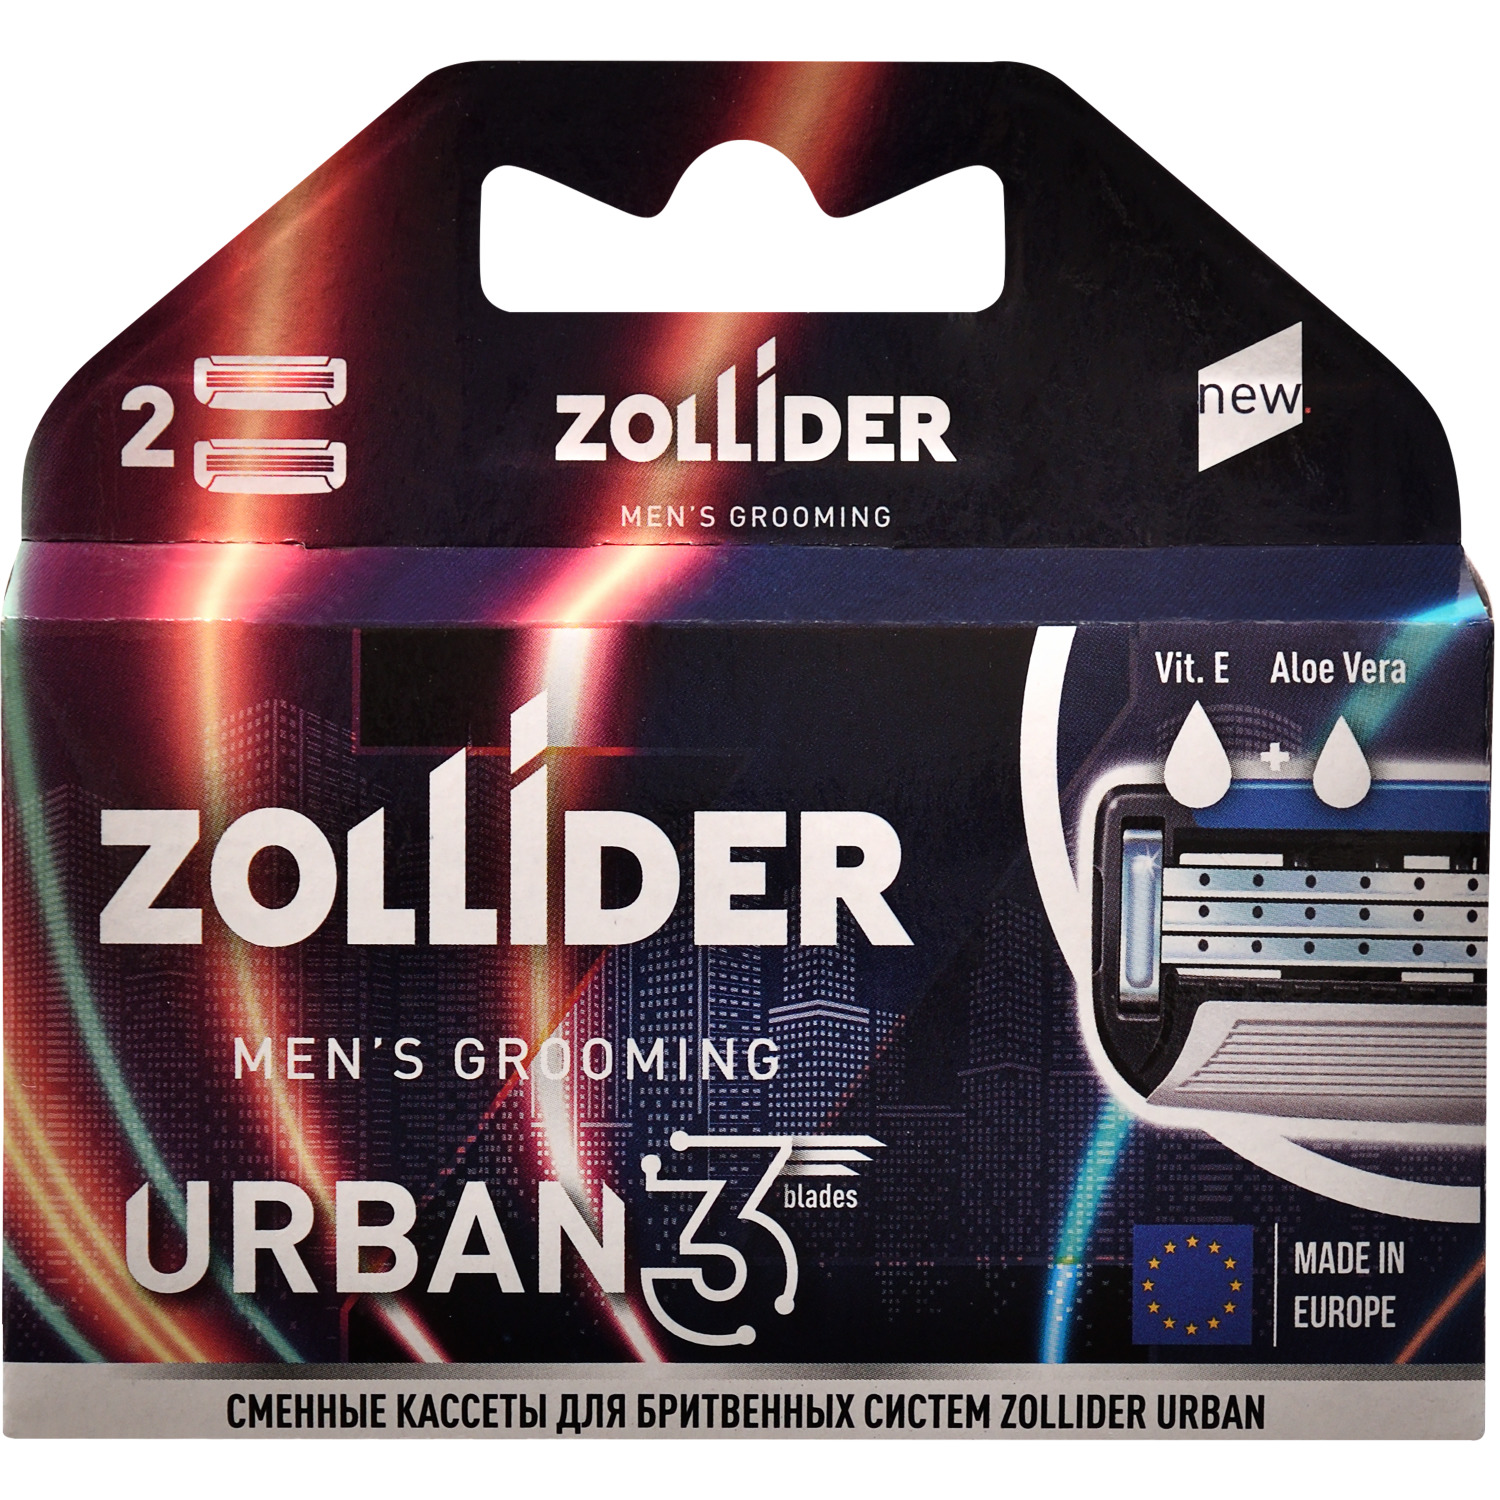 Сменные кассеты Zollider URBAN 3 blades 3 лезвия 2 шт